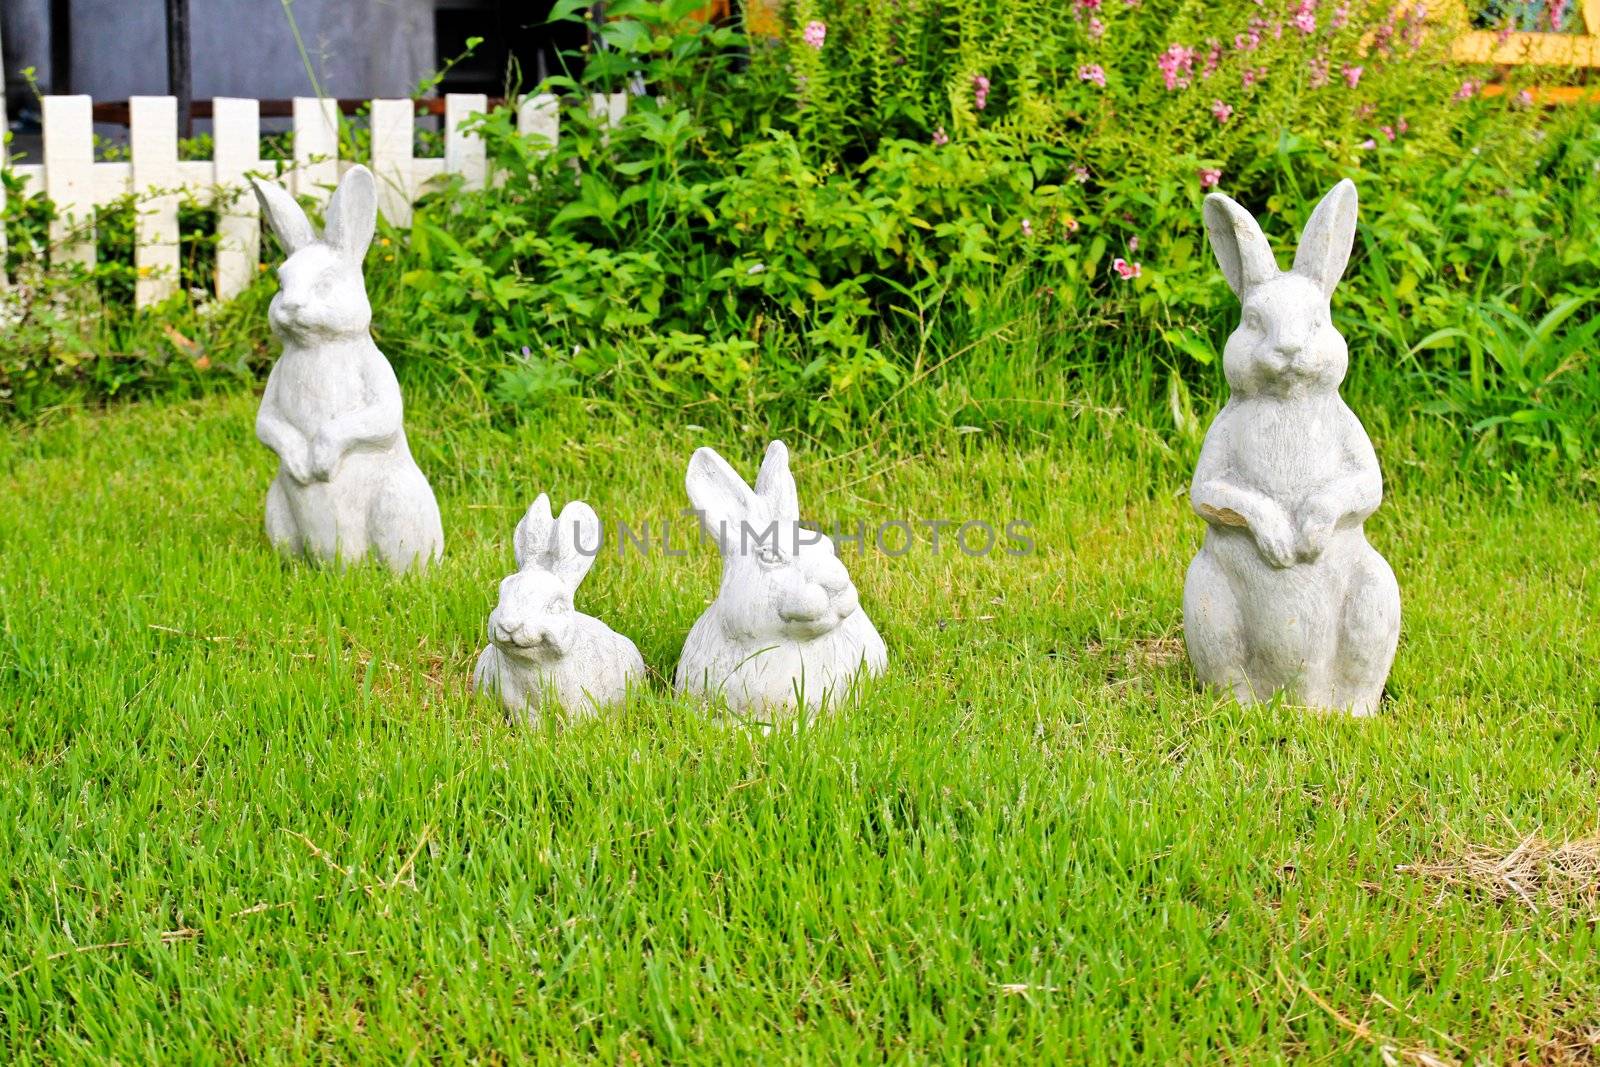 Statue of rabbit in the garden